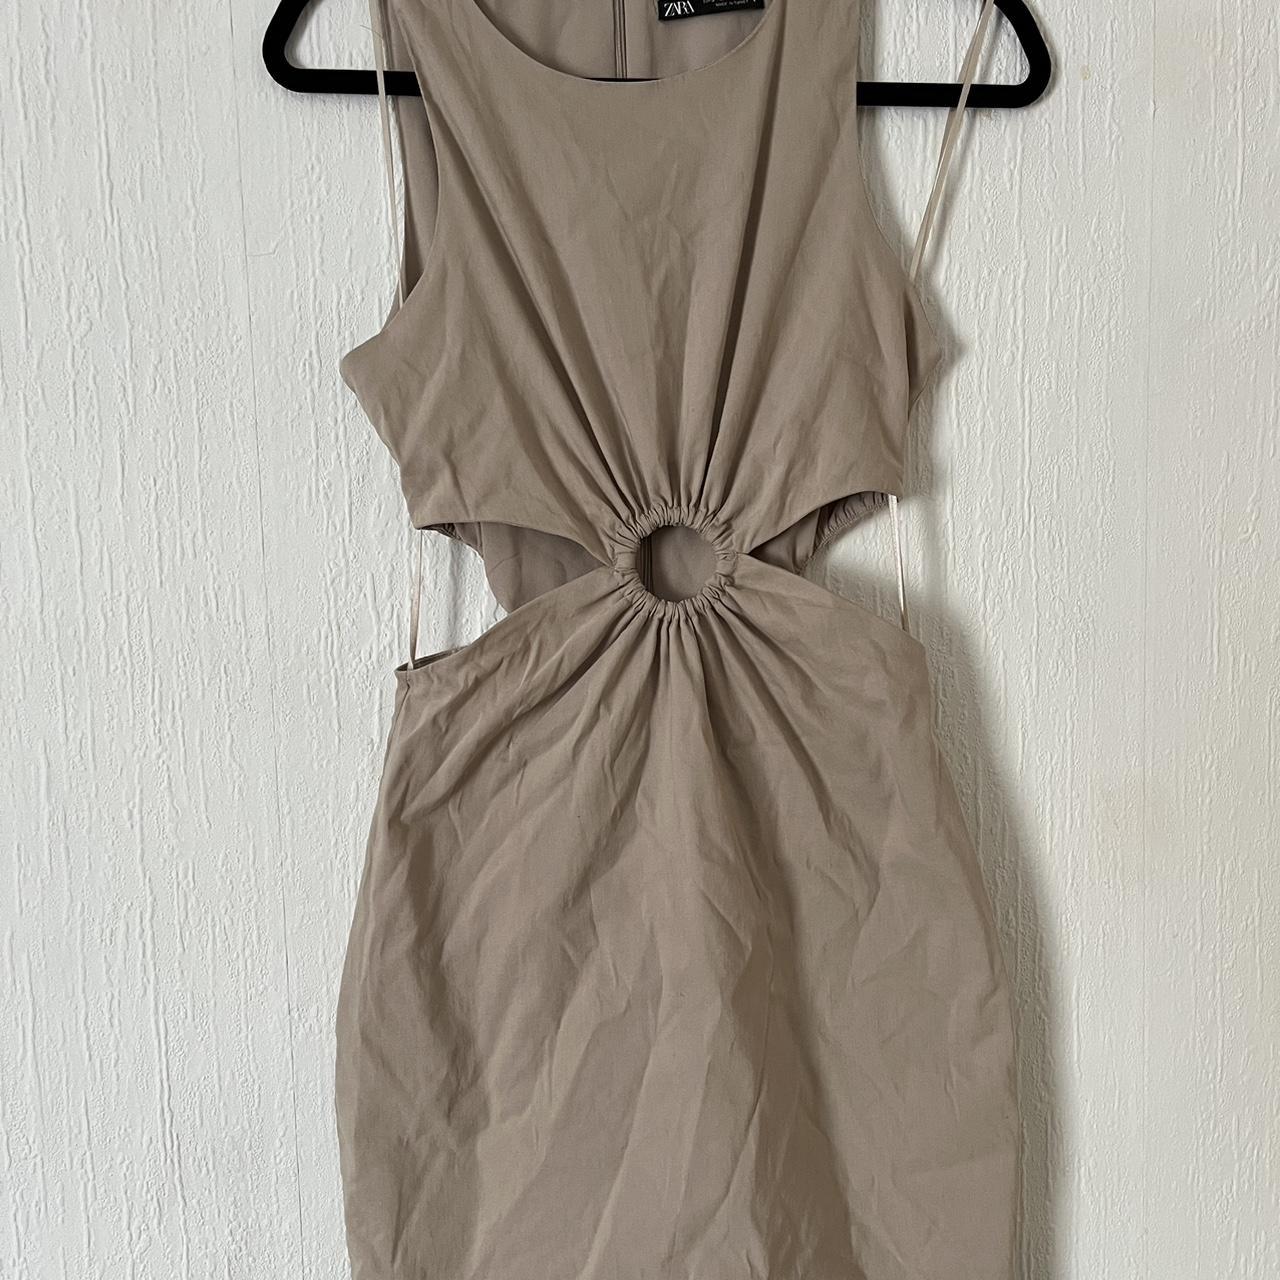 Linen blend dress Selling this really cute linen... - Depop